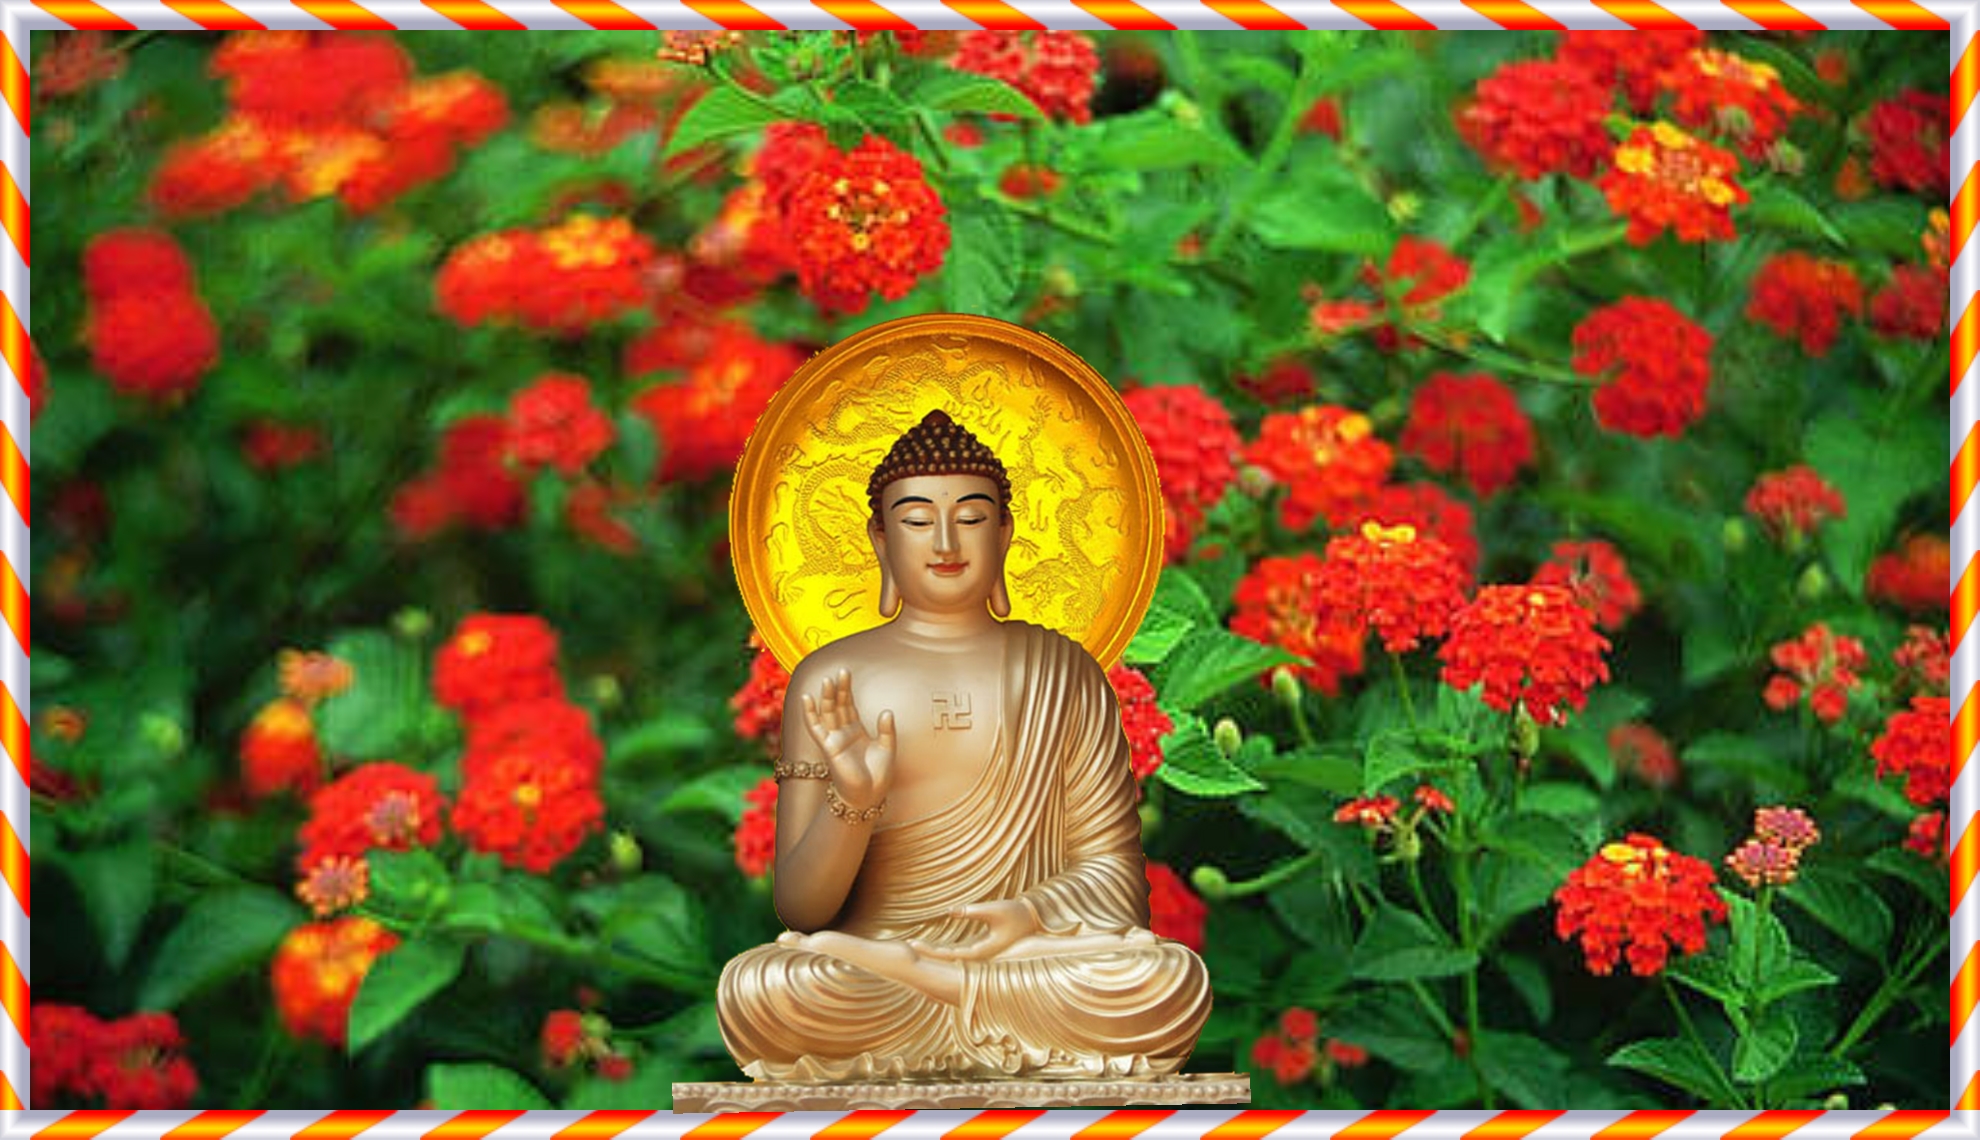 Cùng đắm chìm trong không gian yên bình, tĩnh lặng với phim Phật A Di Đà Full HD. Hình ảnh tuyệt đẹp về Đức Phật sẽ giúp bạn tìm lại sự bình an và cảm nhận được trọn vẹn các tinh hoa của đạo Phật.